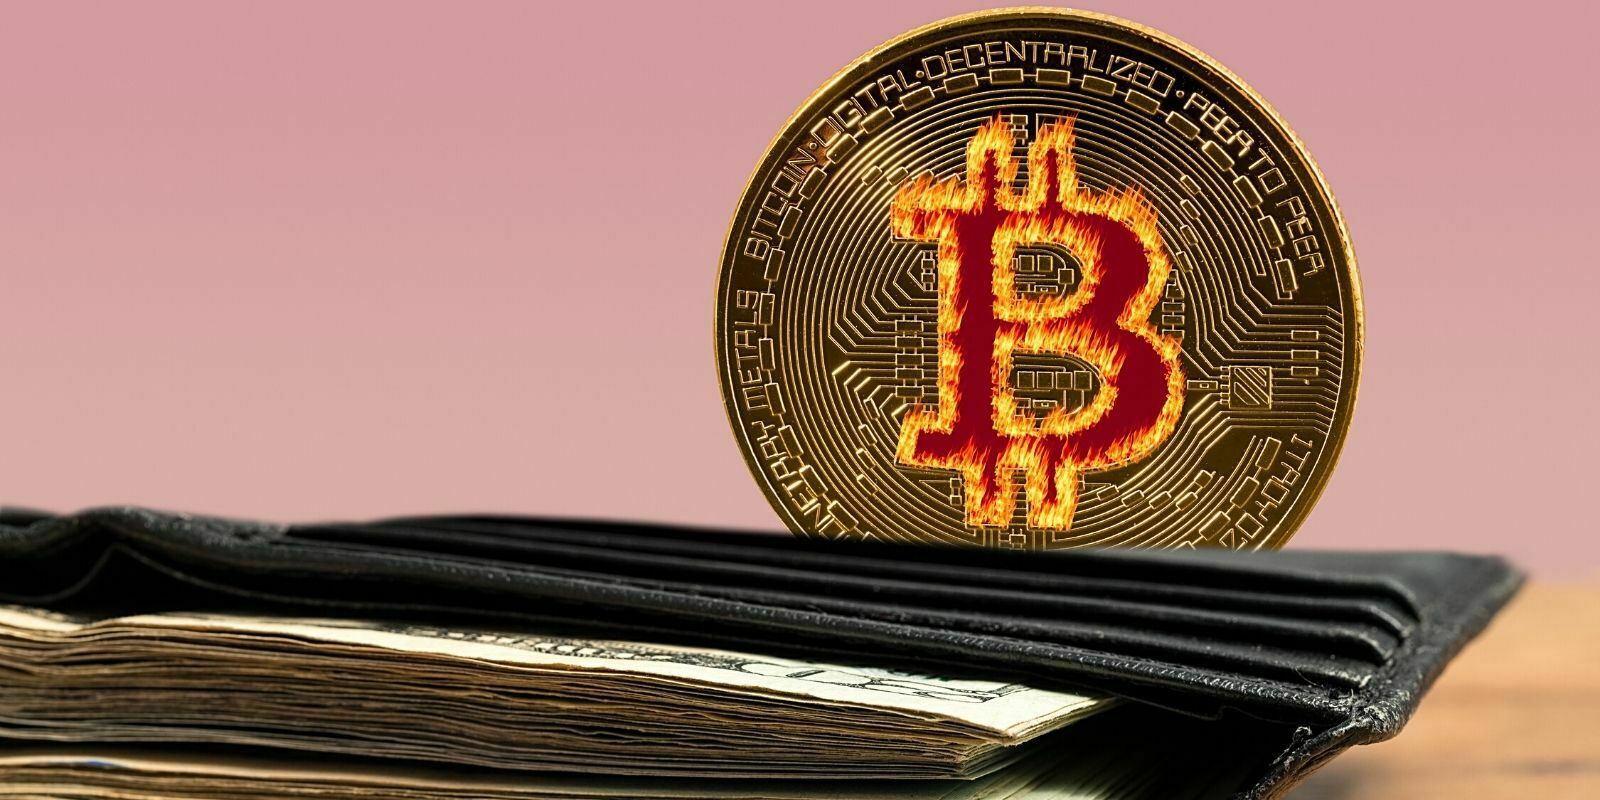 Le Bitcoin (BTC) atteint 1 400 000 $ sur Livecoin - Des hackers manipulent les cours de l'exchange